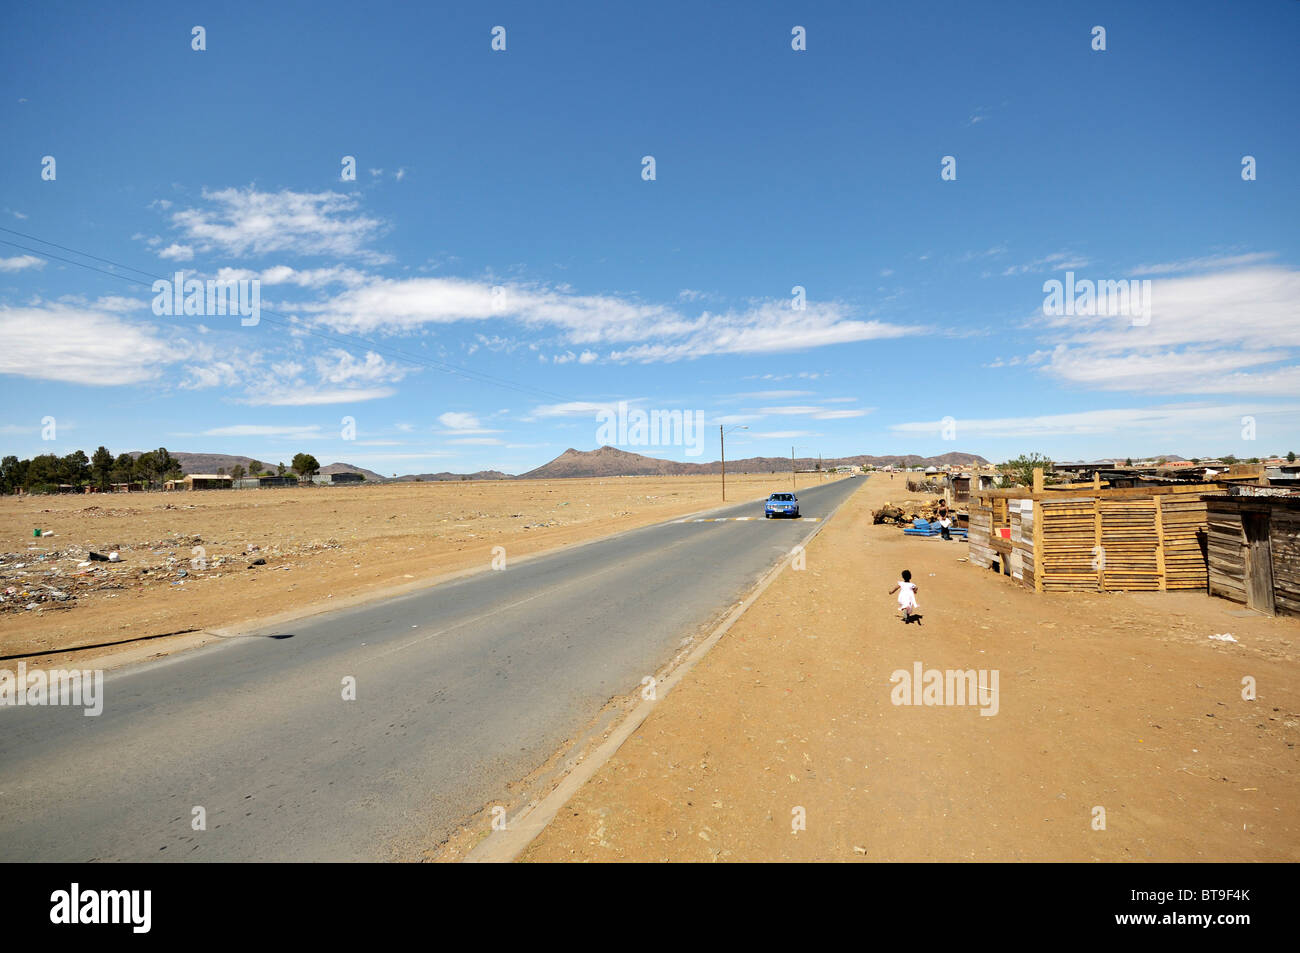 Slum Bezirk, Gemeinde, am Rand einer Straße, Queenstown, Eastern Cape, Südafrika, Afrika Stockfoto